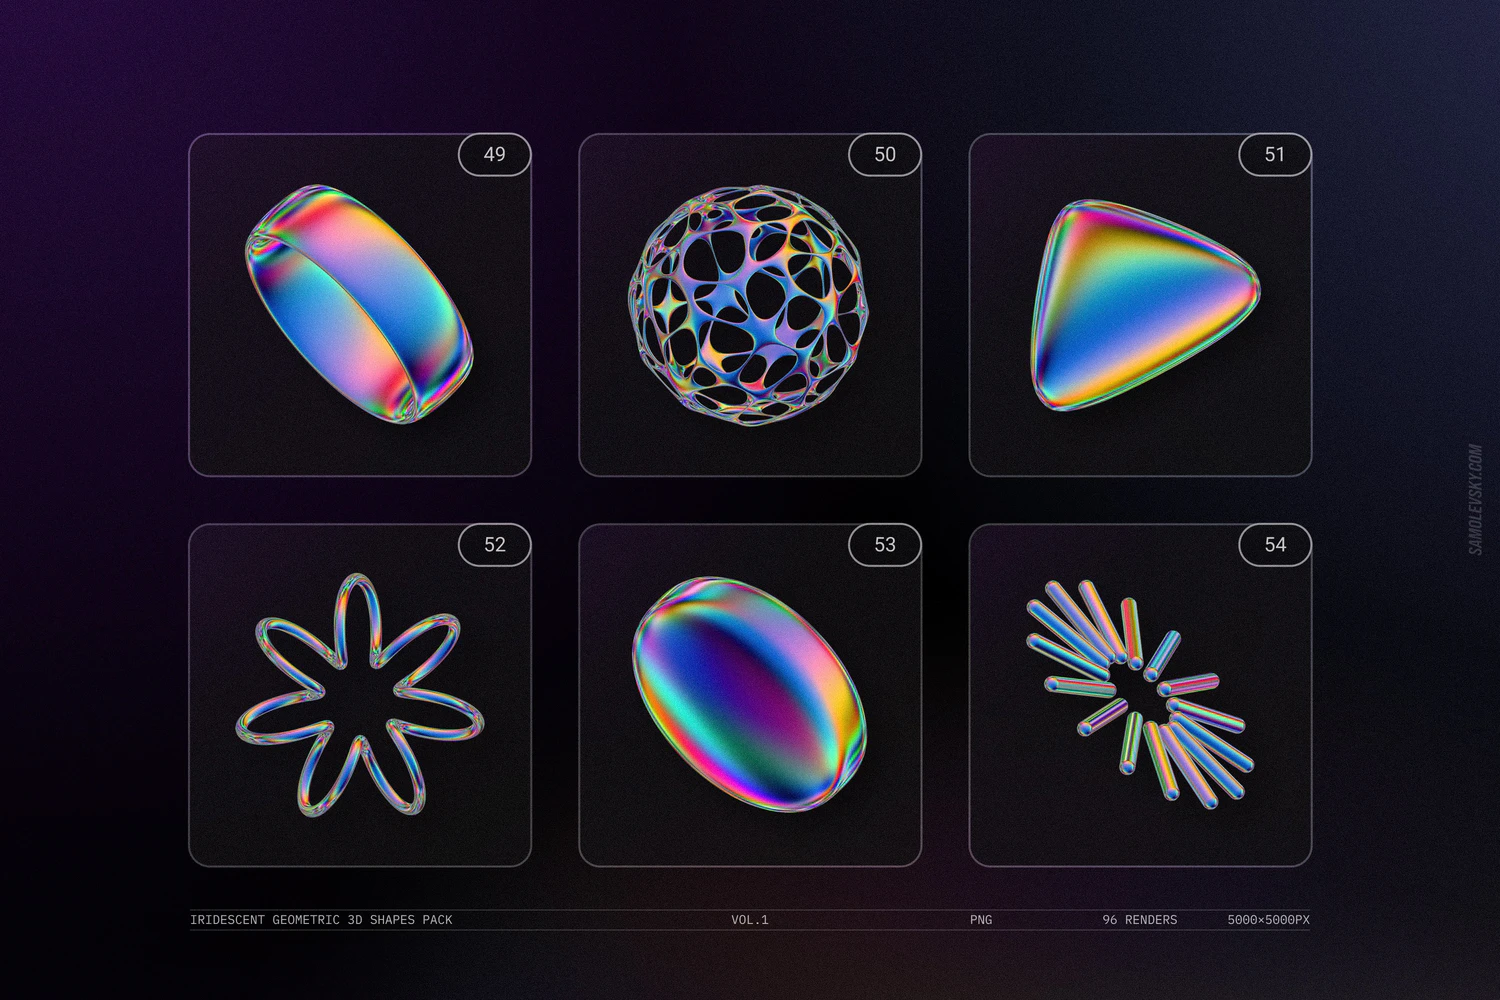 3066 未来科幻机能全息镭射彩虹3D立体金属几何png免抠图片素材 Iridescent geometric 3D shapes VOL